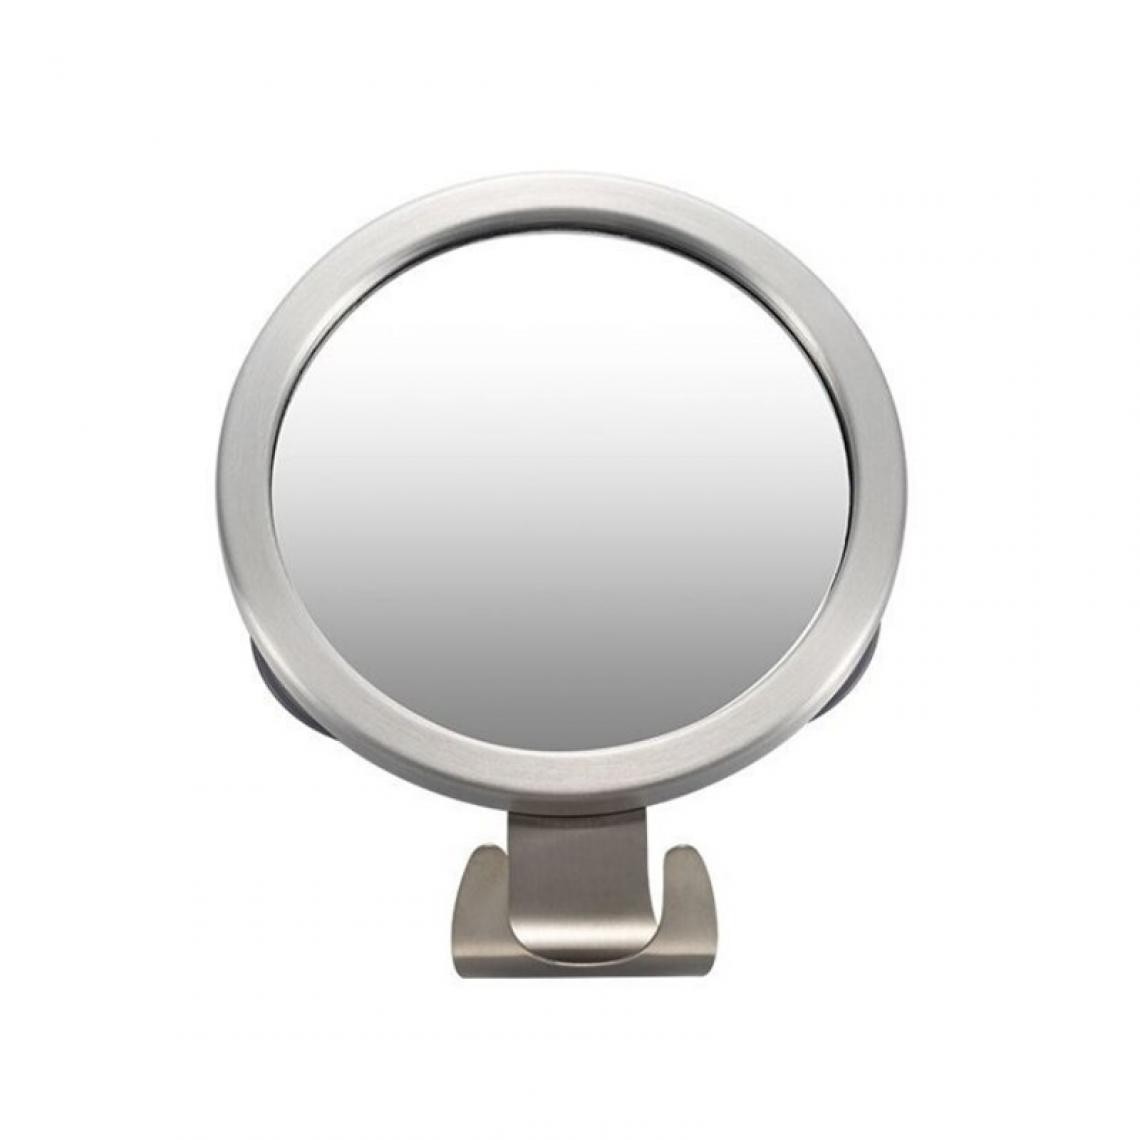 Universal - Miroir de douche anti-brouillard inox toilette miroir de rasage mur miroir de toilette aspirateur crochet pour la salle de bain(Argent) - Miroir de salle de bain